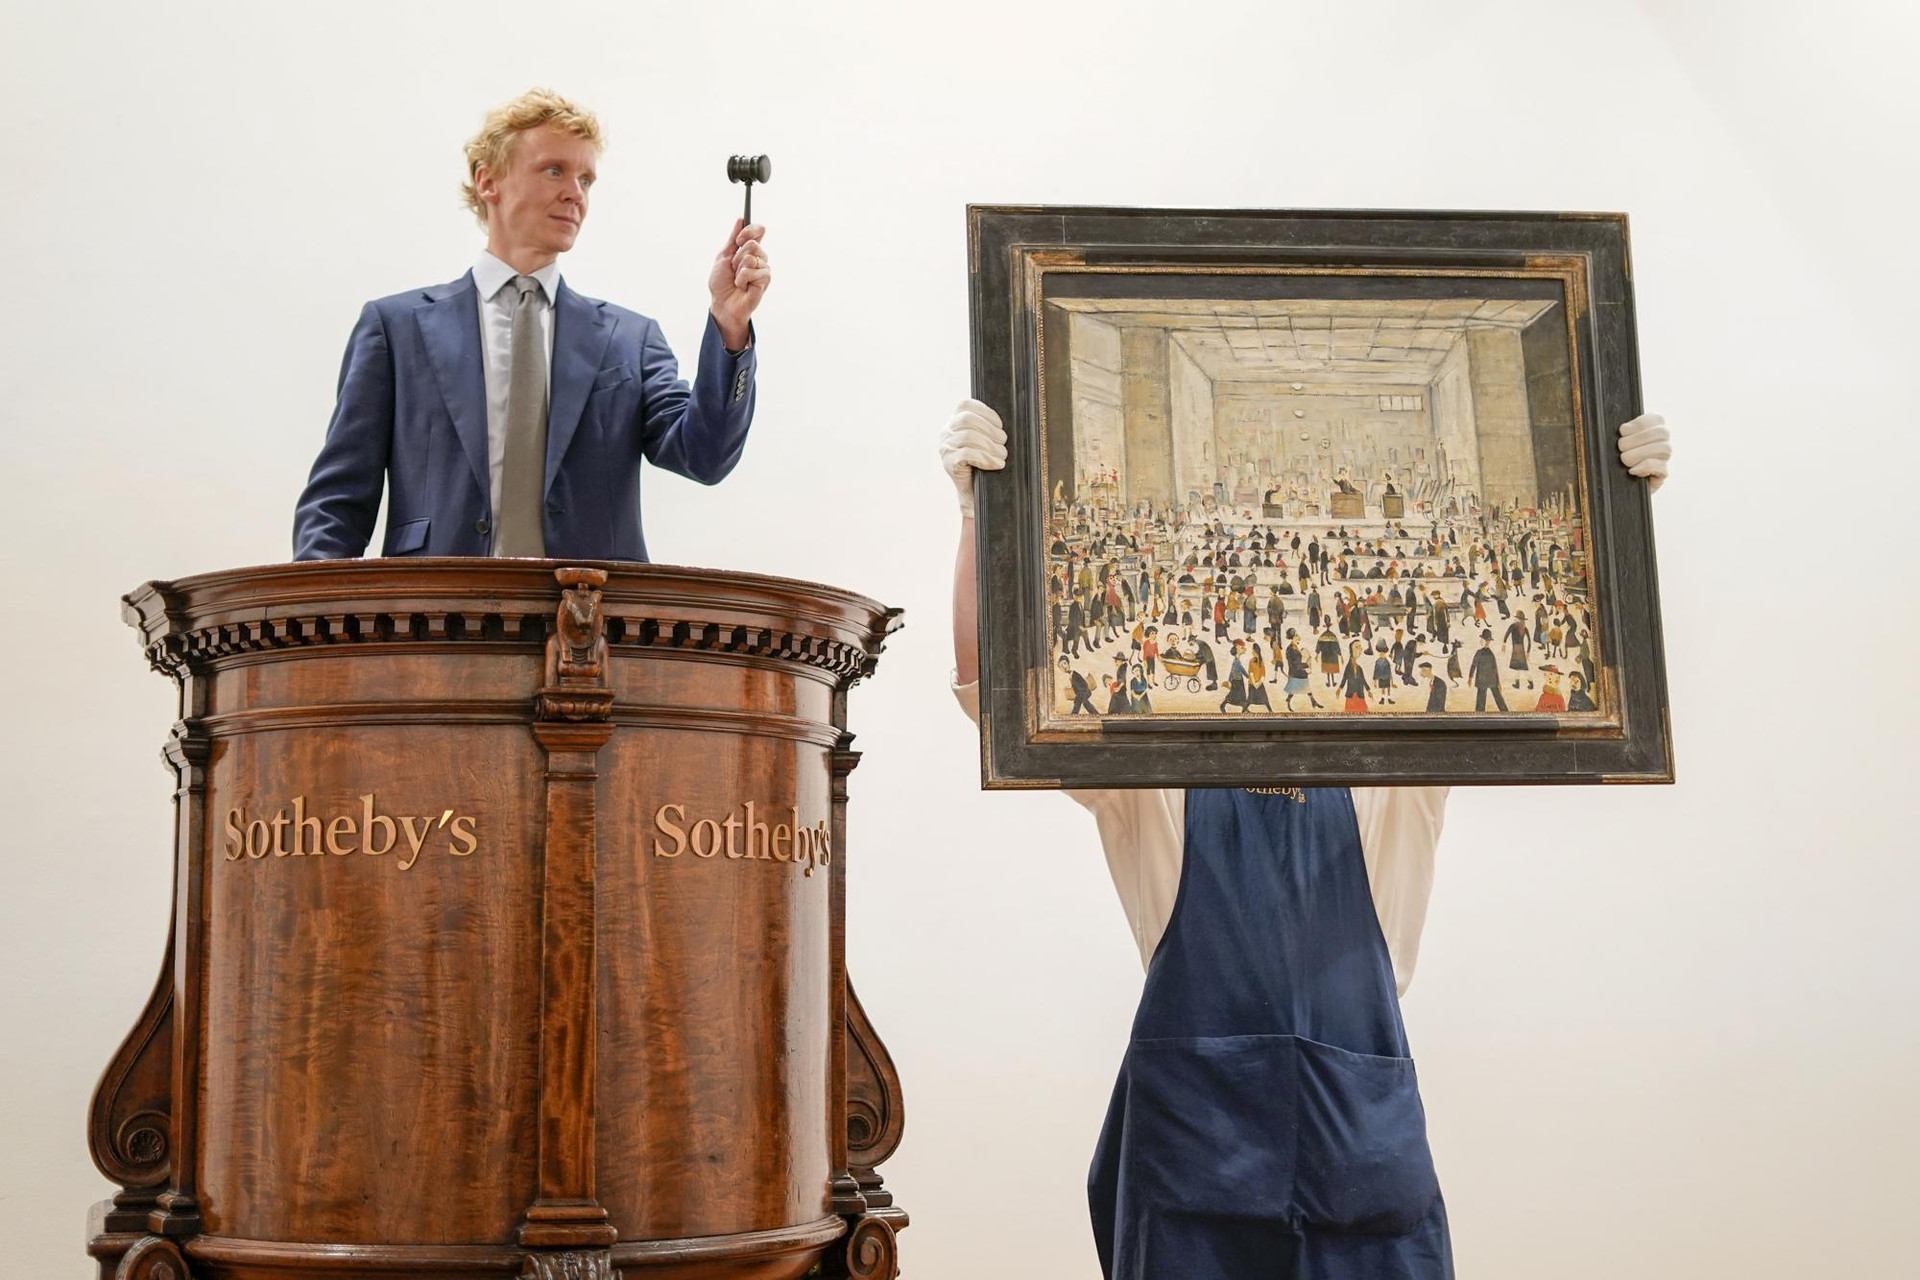 Một nhân viên giữ bức tranh 'The Auction', bức tranh duy nhất được biết đến trong phòng đấu giá của họa sĩ người Anh LS Lowry, tại hội trường đấu giá Sotheby's, ở thủ đô London, vương quốc Anh. Ảnh: AP/Alberto Pezzali.